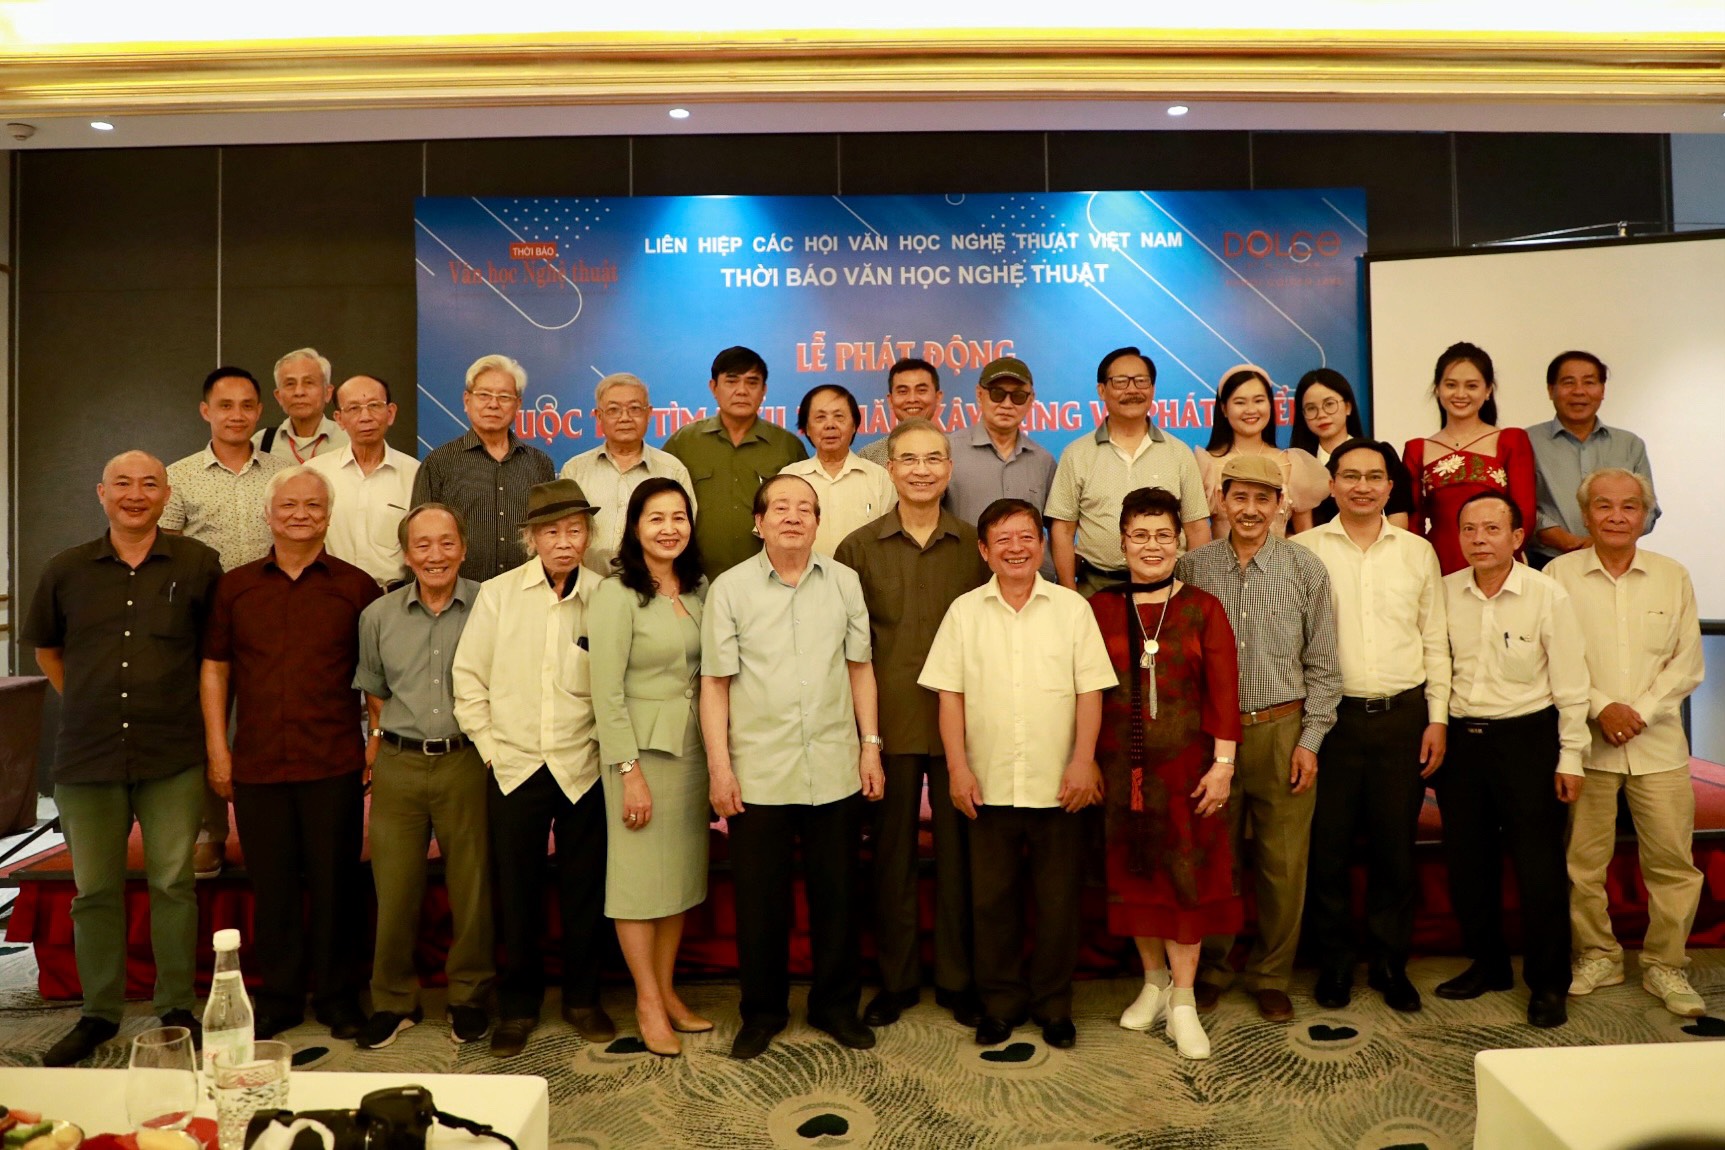 Phát động Cuộc thi Tìm hiểu 75 năm xây dựng và phát triển Liên hiệp các Hội Văn học nghệ thuật Việt Nam - 7